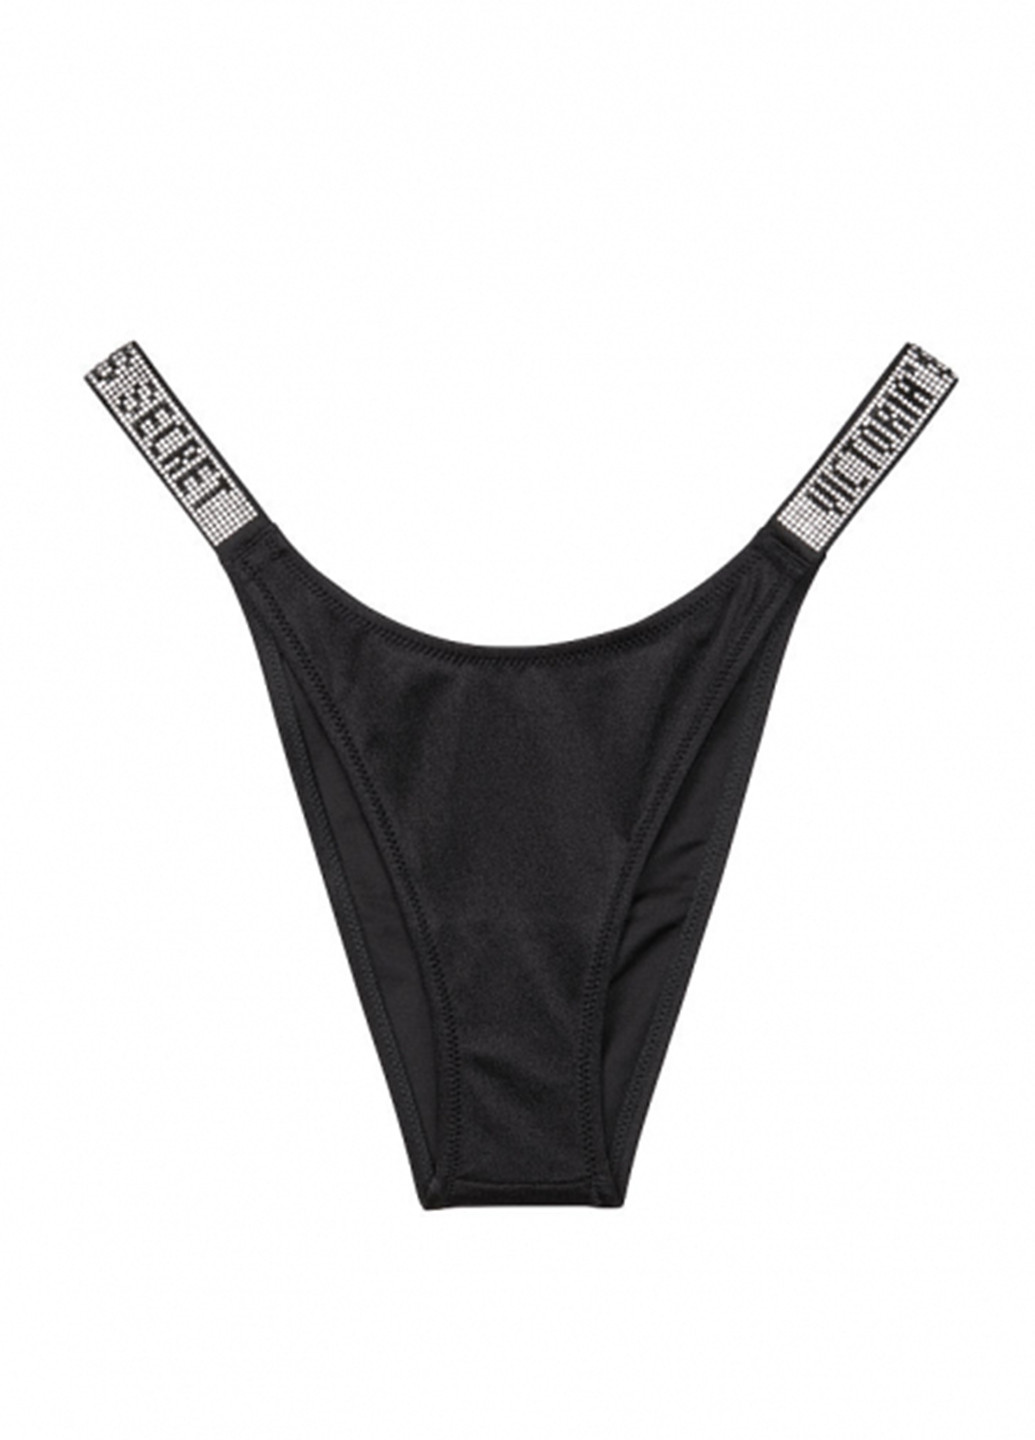 Чорний літній купальник (ліф, трусики) бікіні, роздільний Victoria's Secret